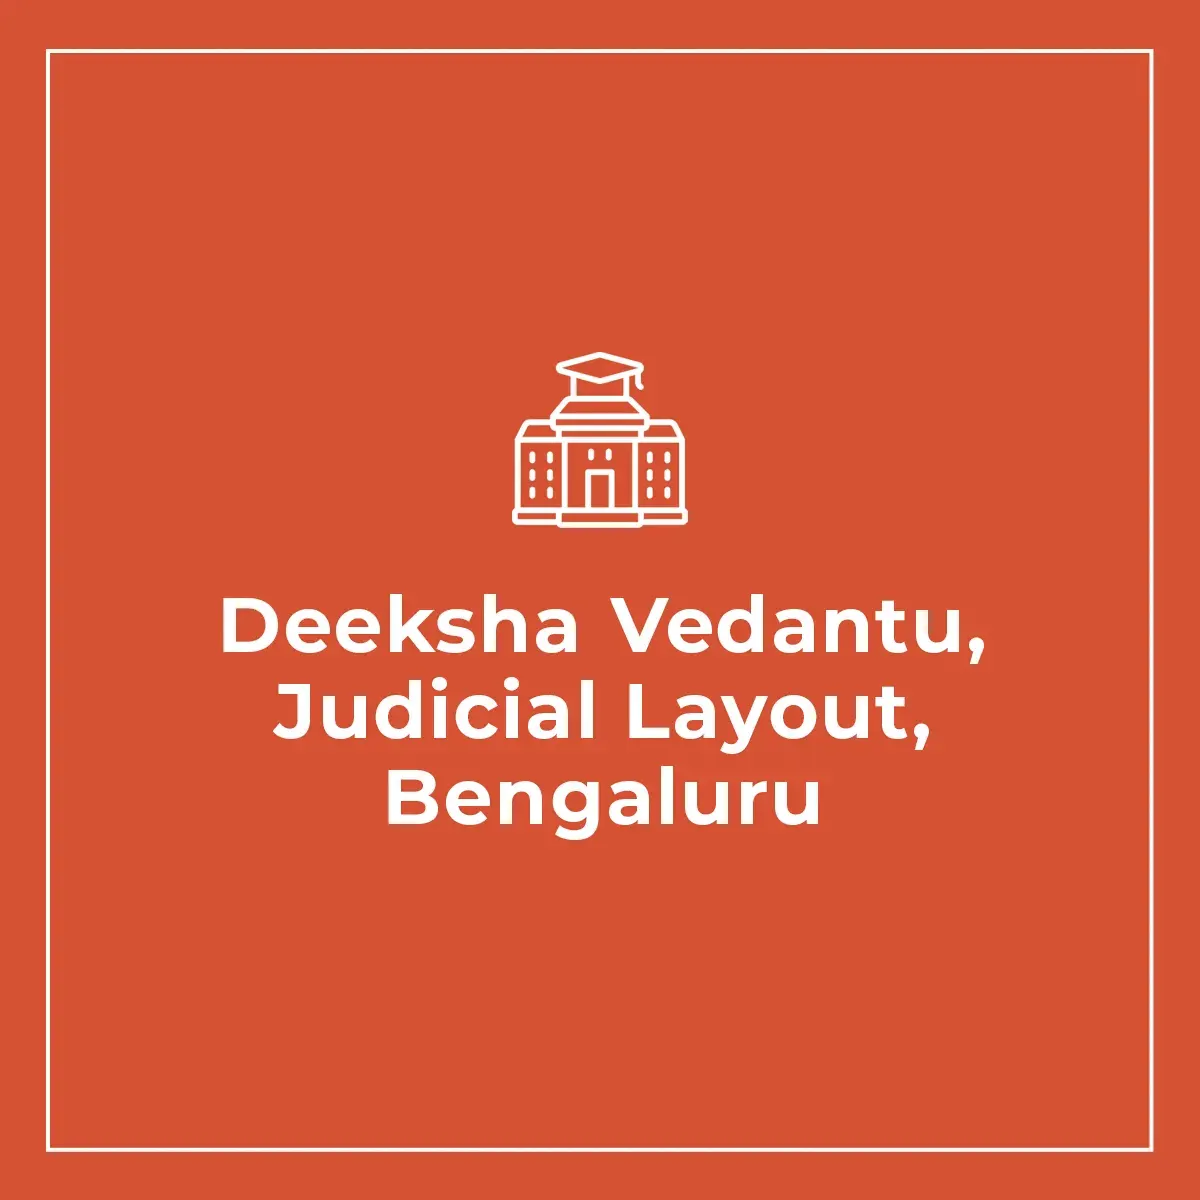 Deeksha Vedantu, Judicial Layout, Bengaluru